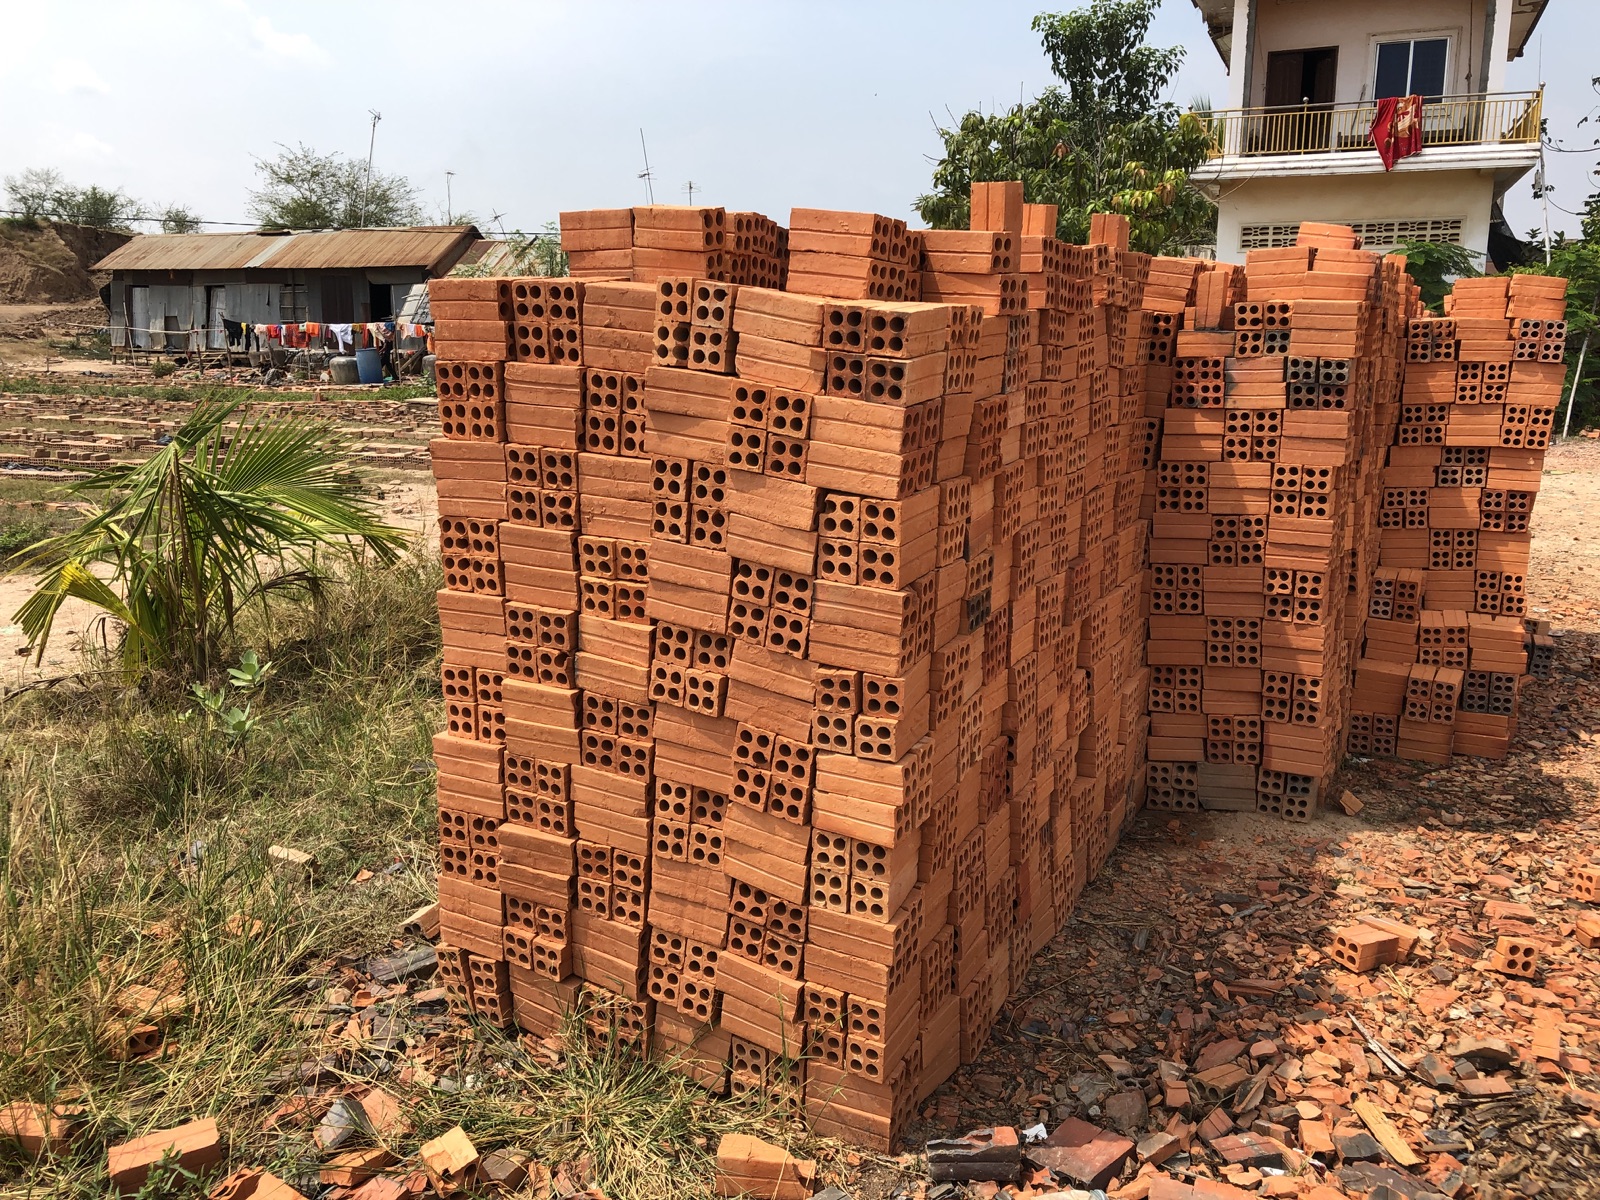 Bricks in Cambodia - New Naratif